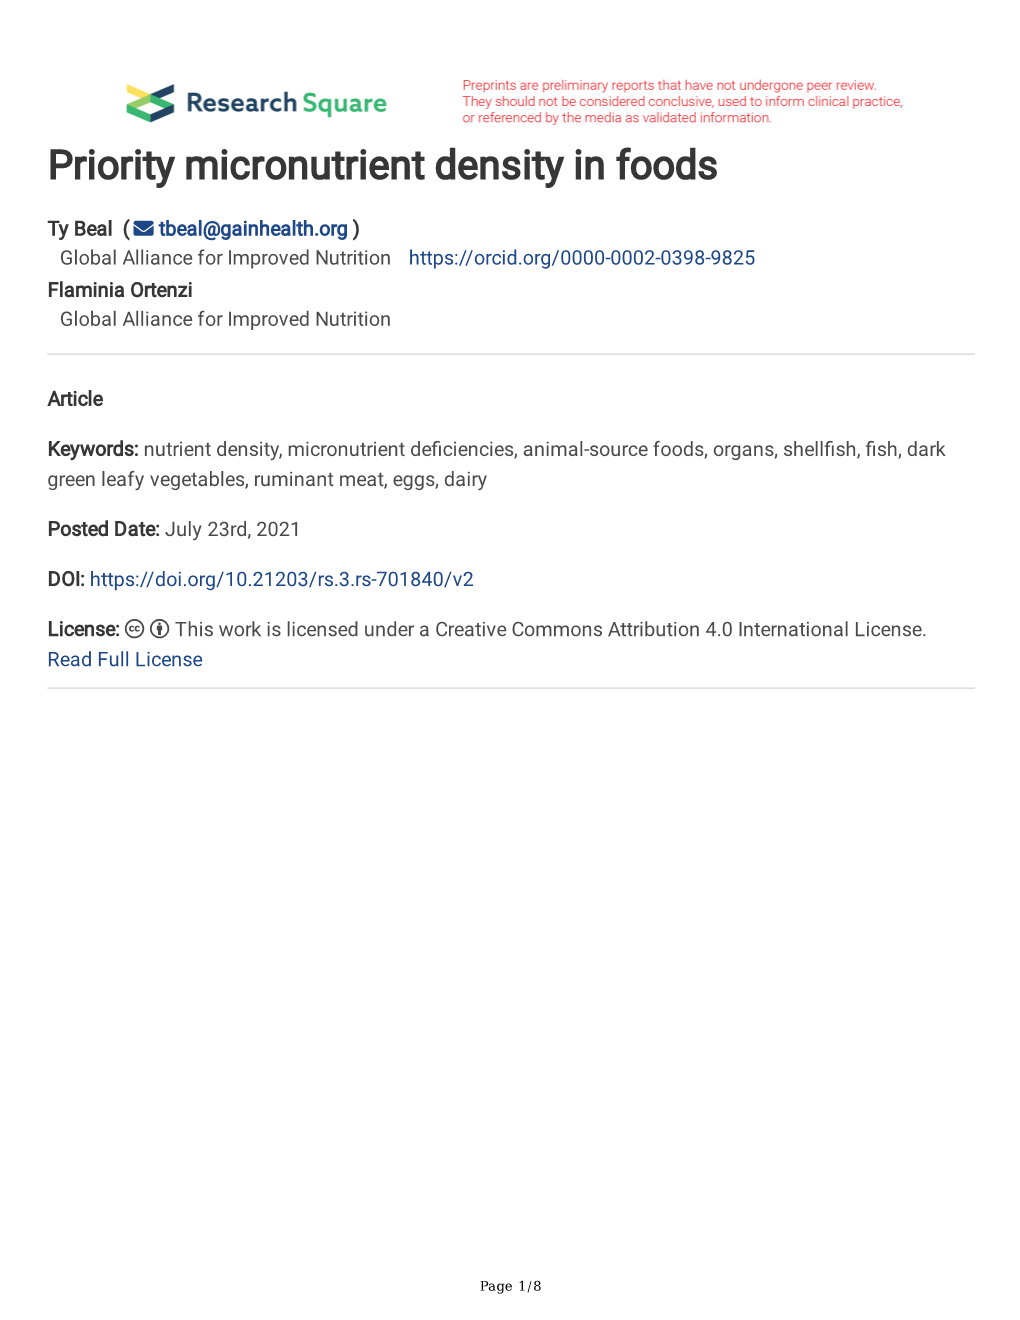 Priority Micronutrient Density in Foods